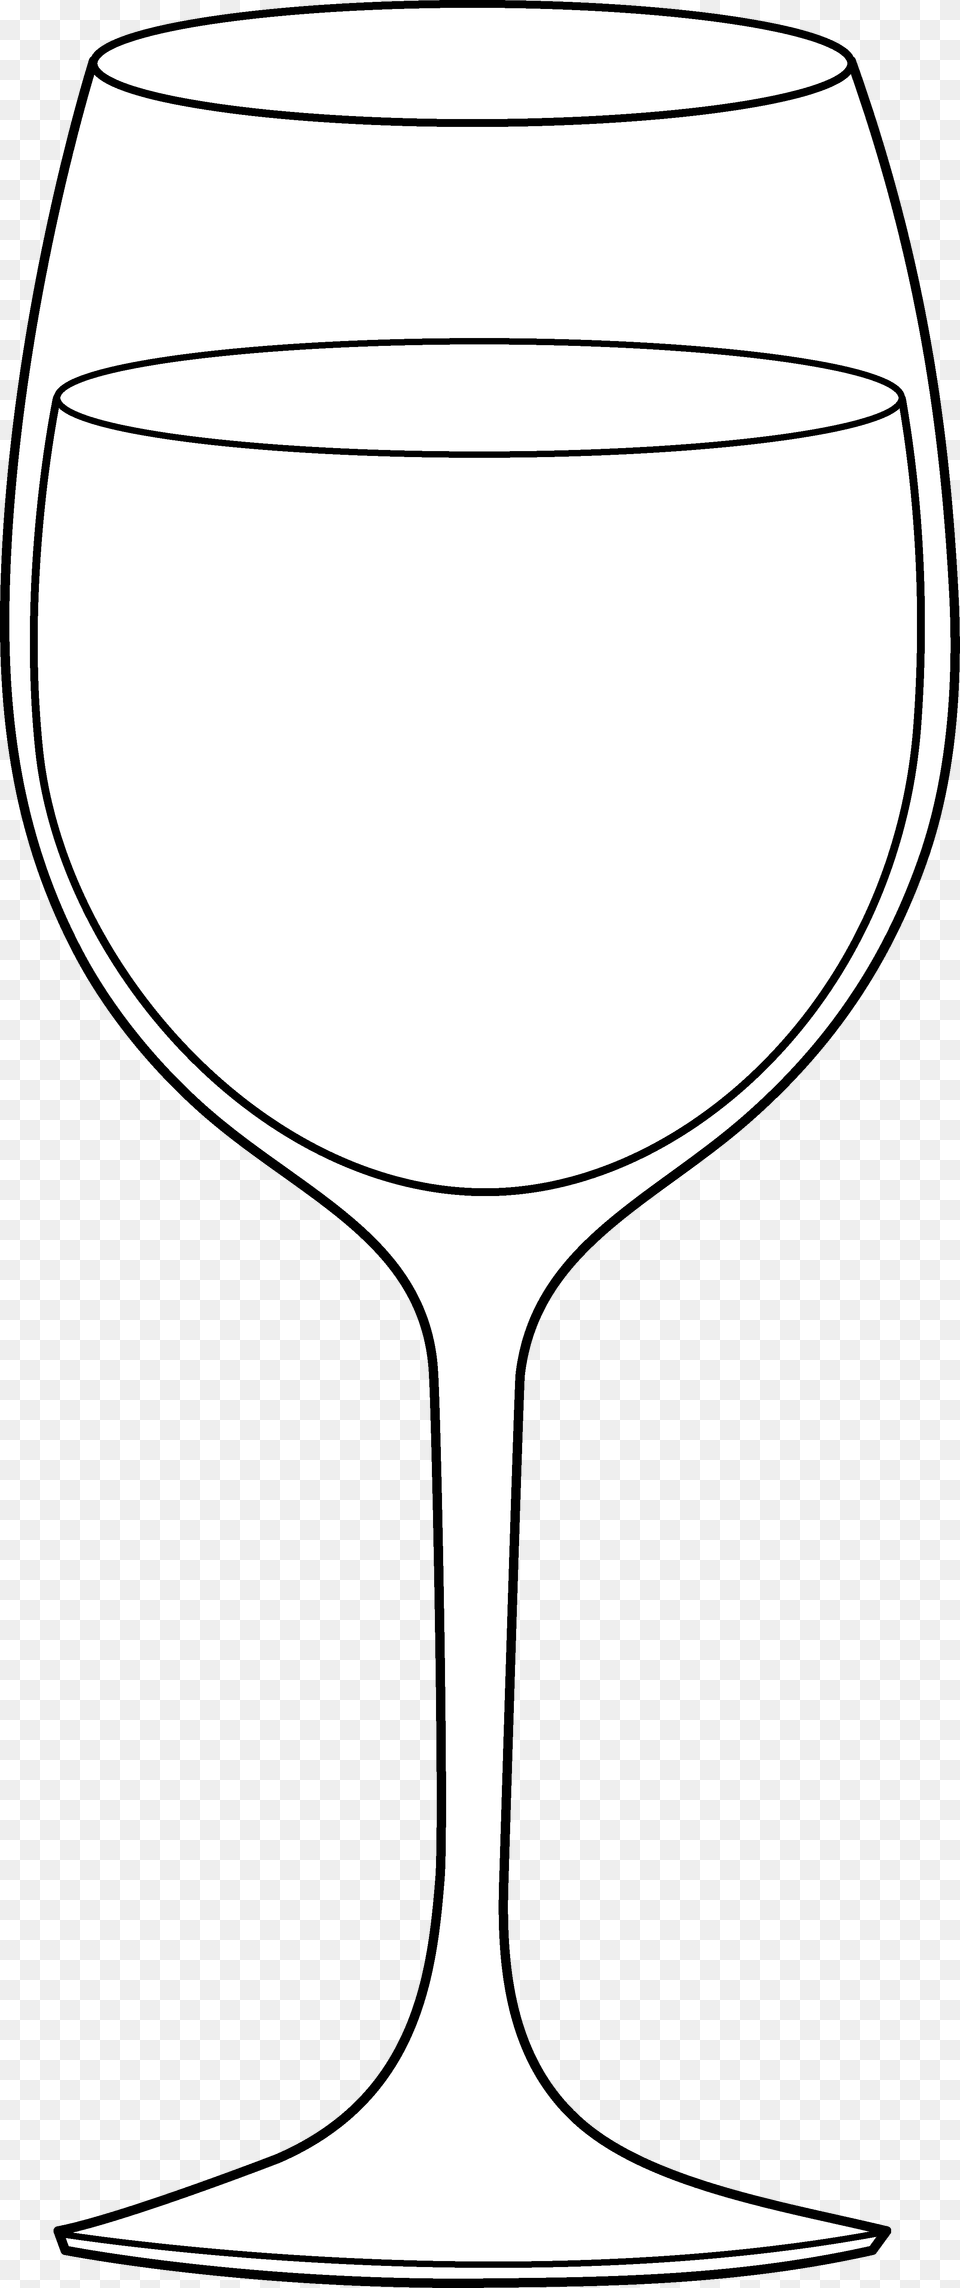 Wine Glass Line Art Clip Clipart Clip Art, Alcohol, Liquor, Goblet, Wine Glass Png Image